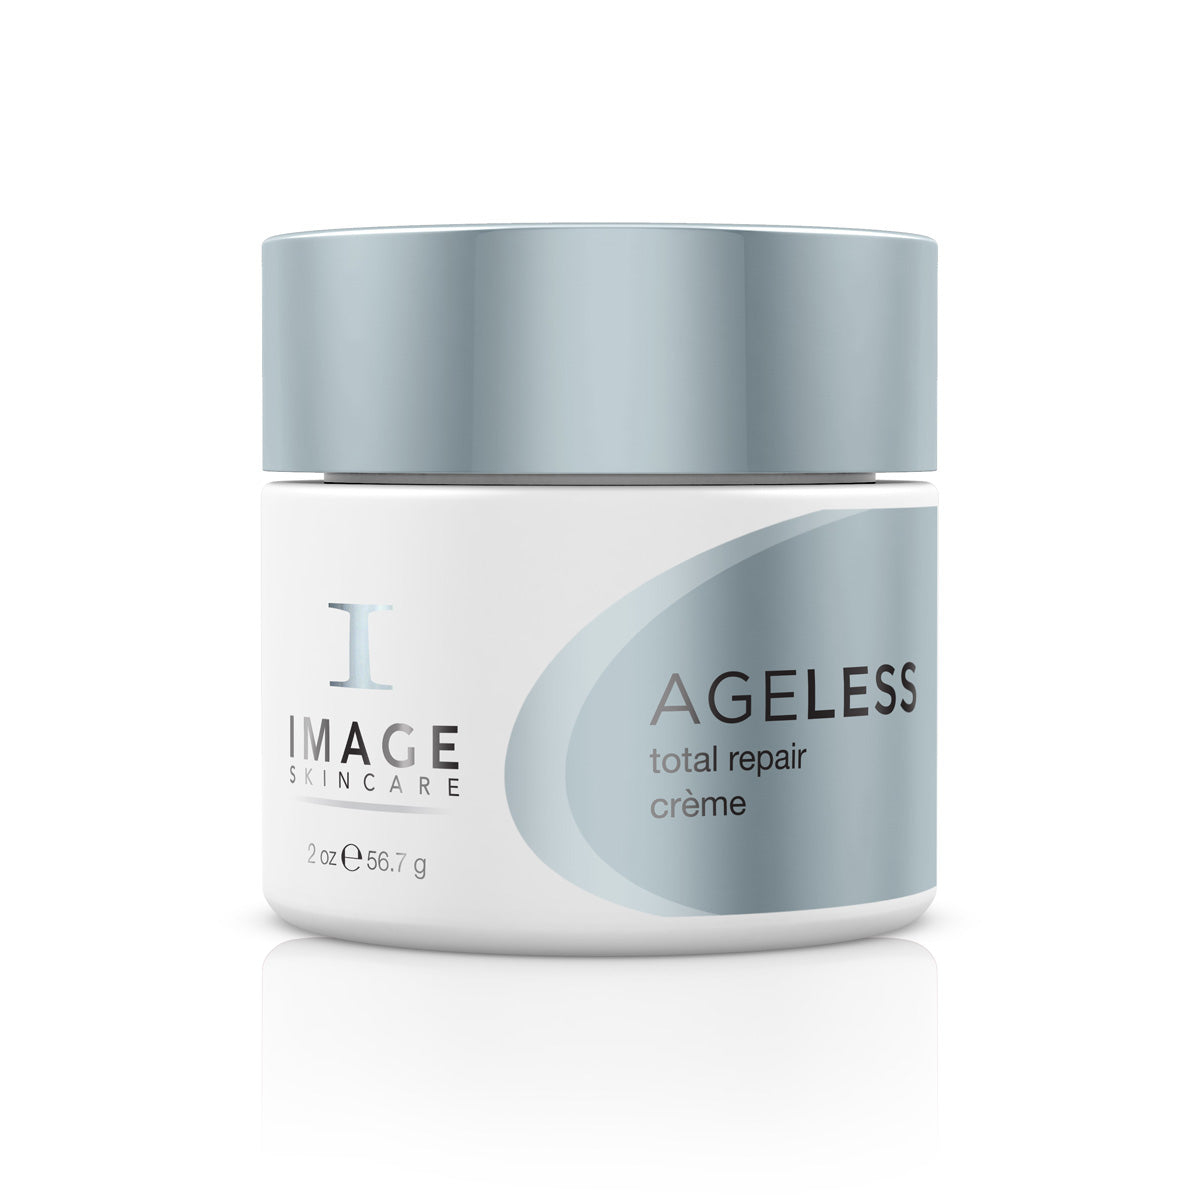 Image Skincare Total Repair Crème